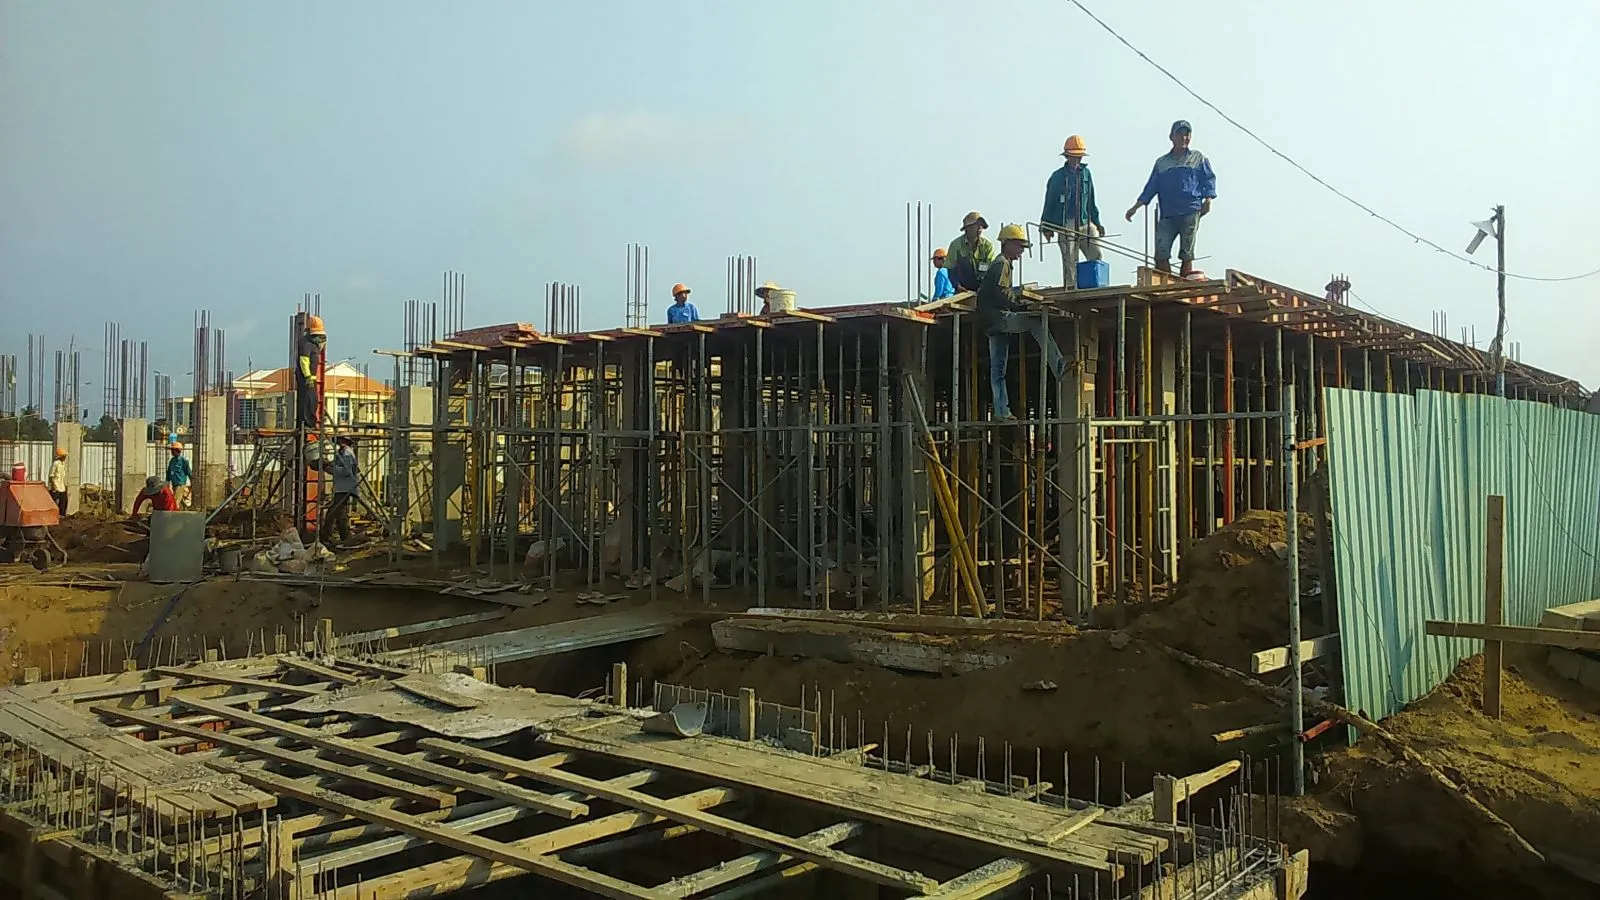 Xây dựng nhà trọn gói ban quản lý tỉnh Tiền Giang - 3